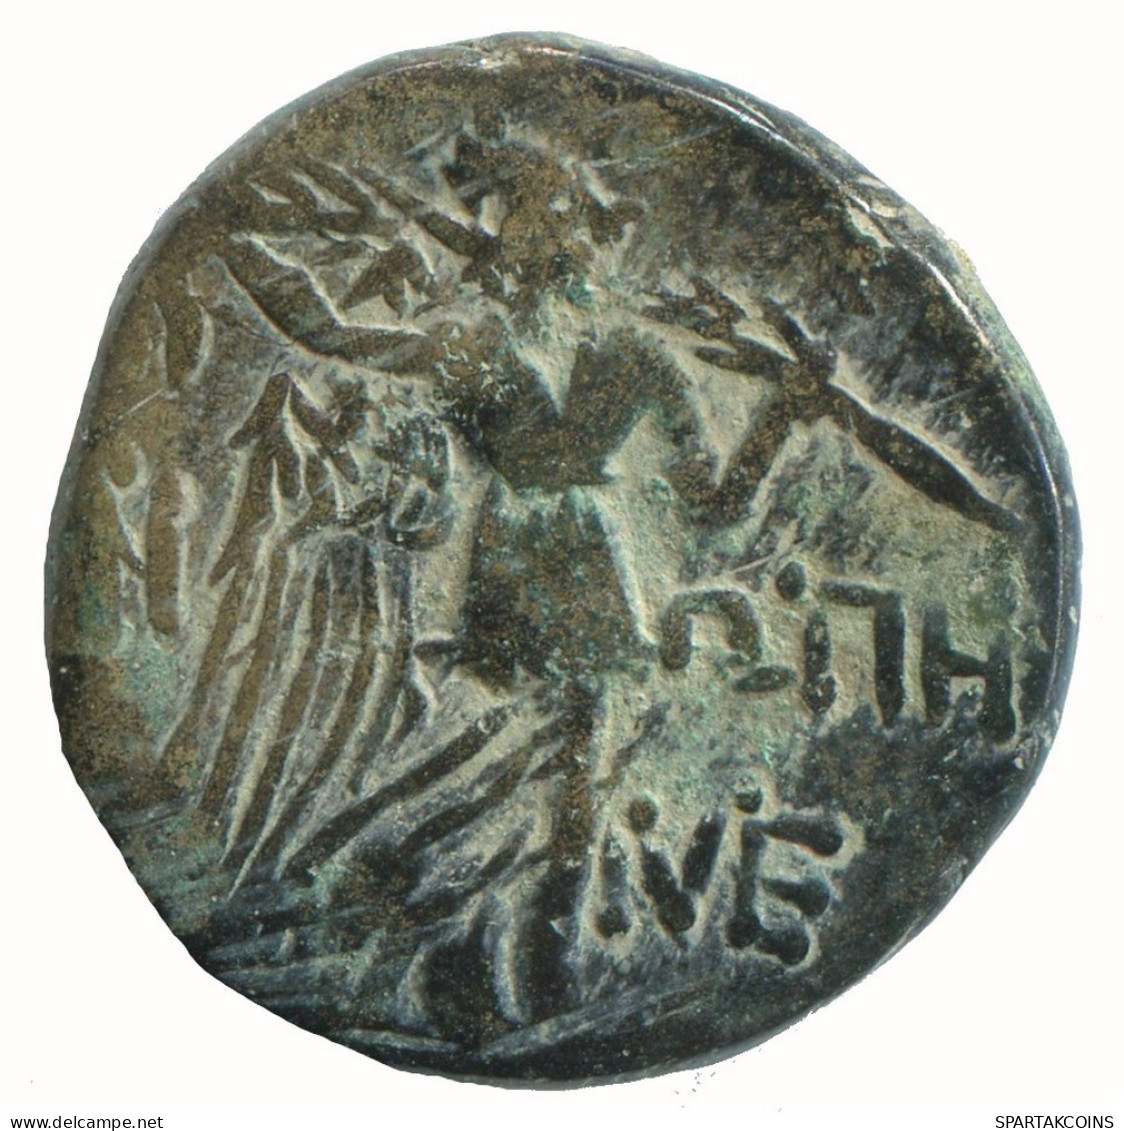 AMISOS PONTOS 100 BC Aegis With Facing Gorgon 6.8g/20mm #NNN1546.30.U.A - Griechische Münzen